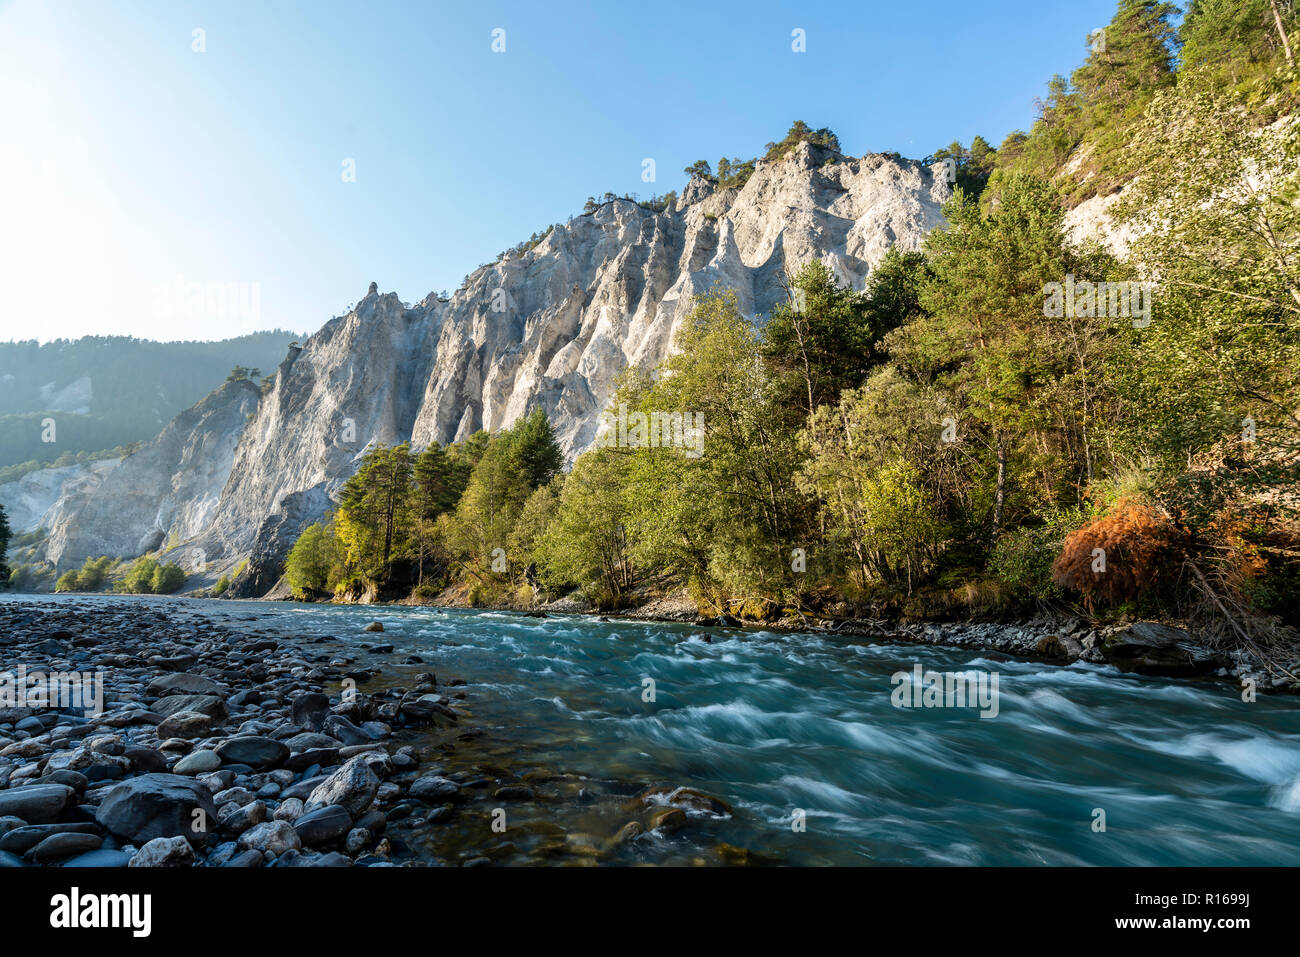 Gorges du Rhin (Ruinaulta), Canton des Grisons, Suisse Banque D'Images